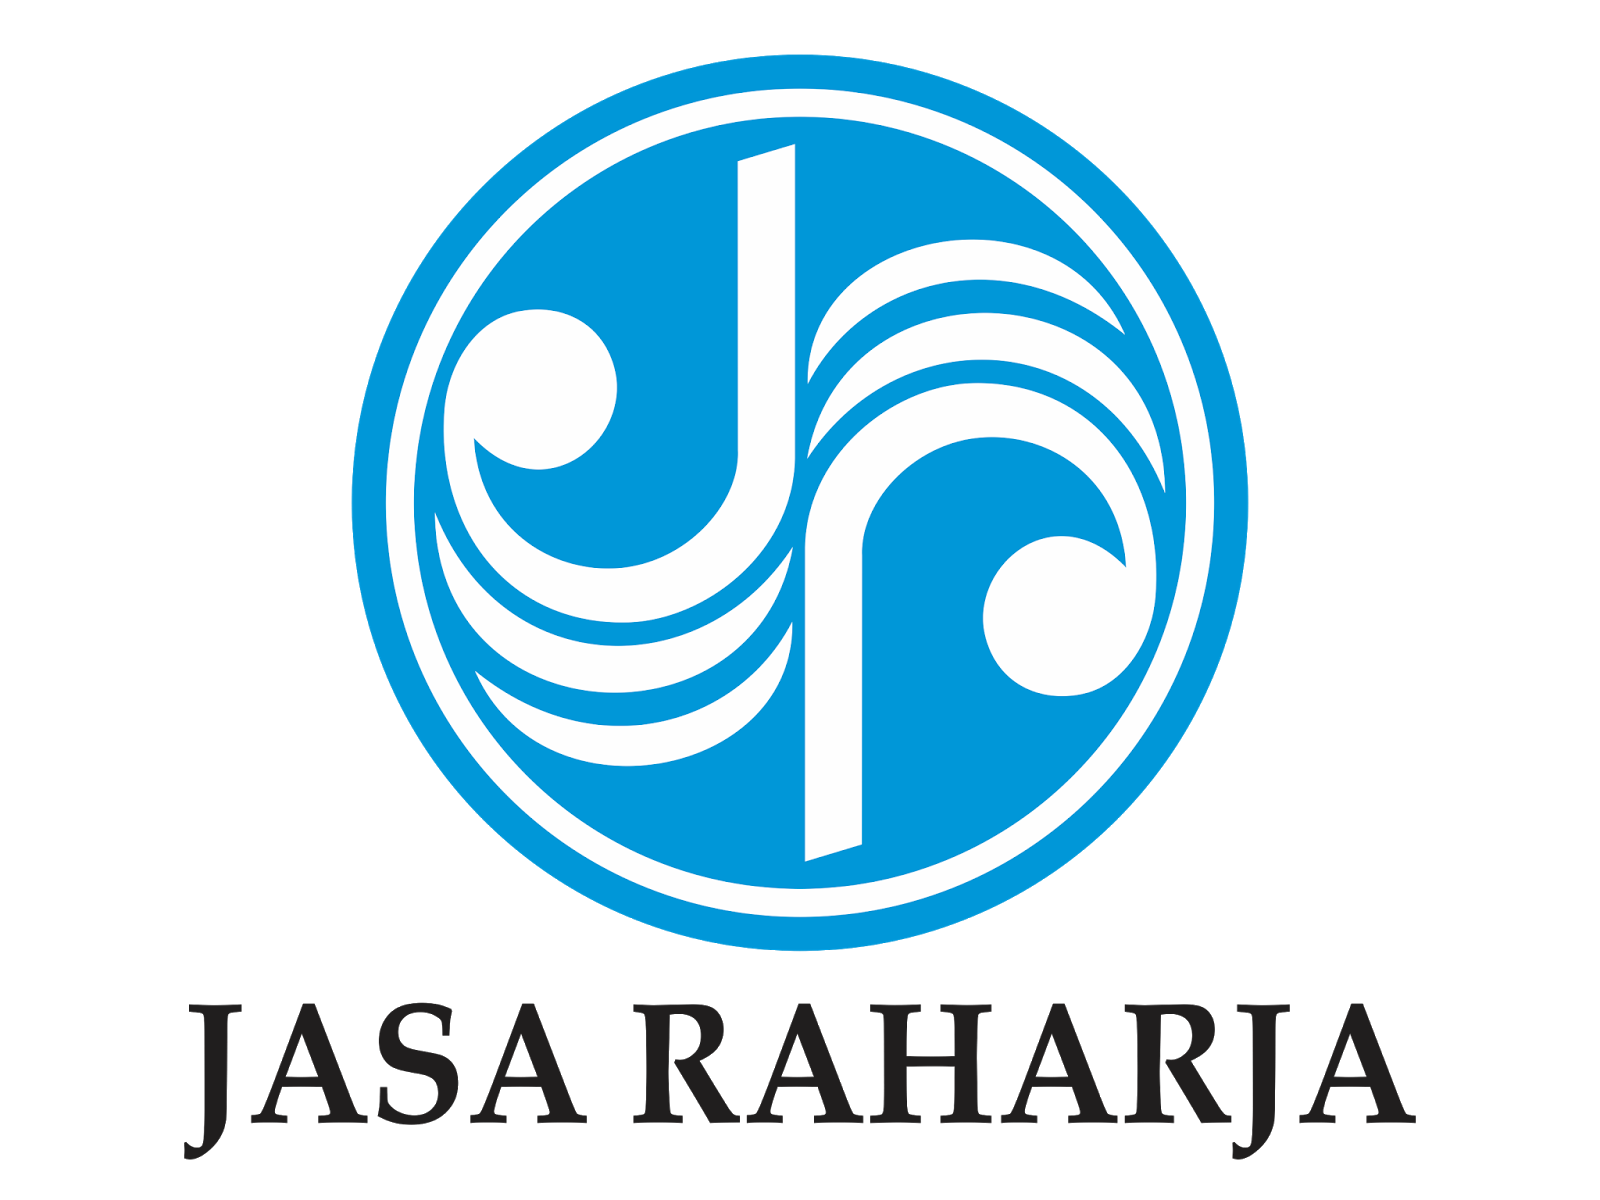 kisspng-logo-jasa-raharja-portable-network-graphics-image-jelajah-sumbar-yuk-ngetrip-bareng-kami-5be2423e349c61.2697862215415547502155